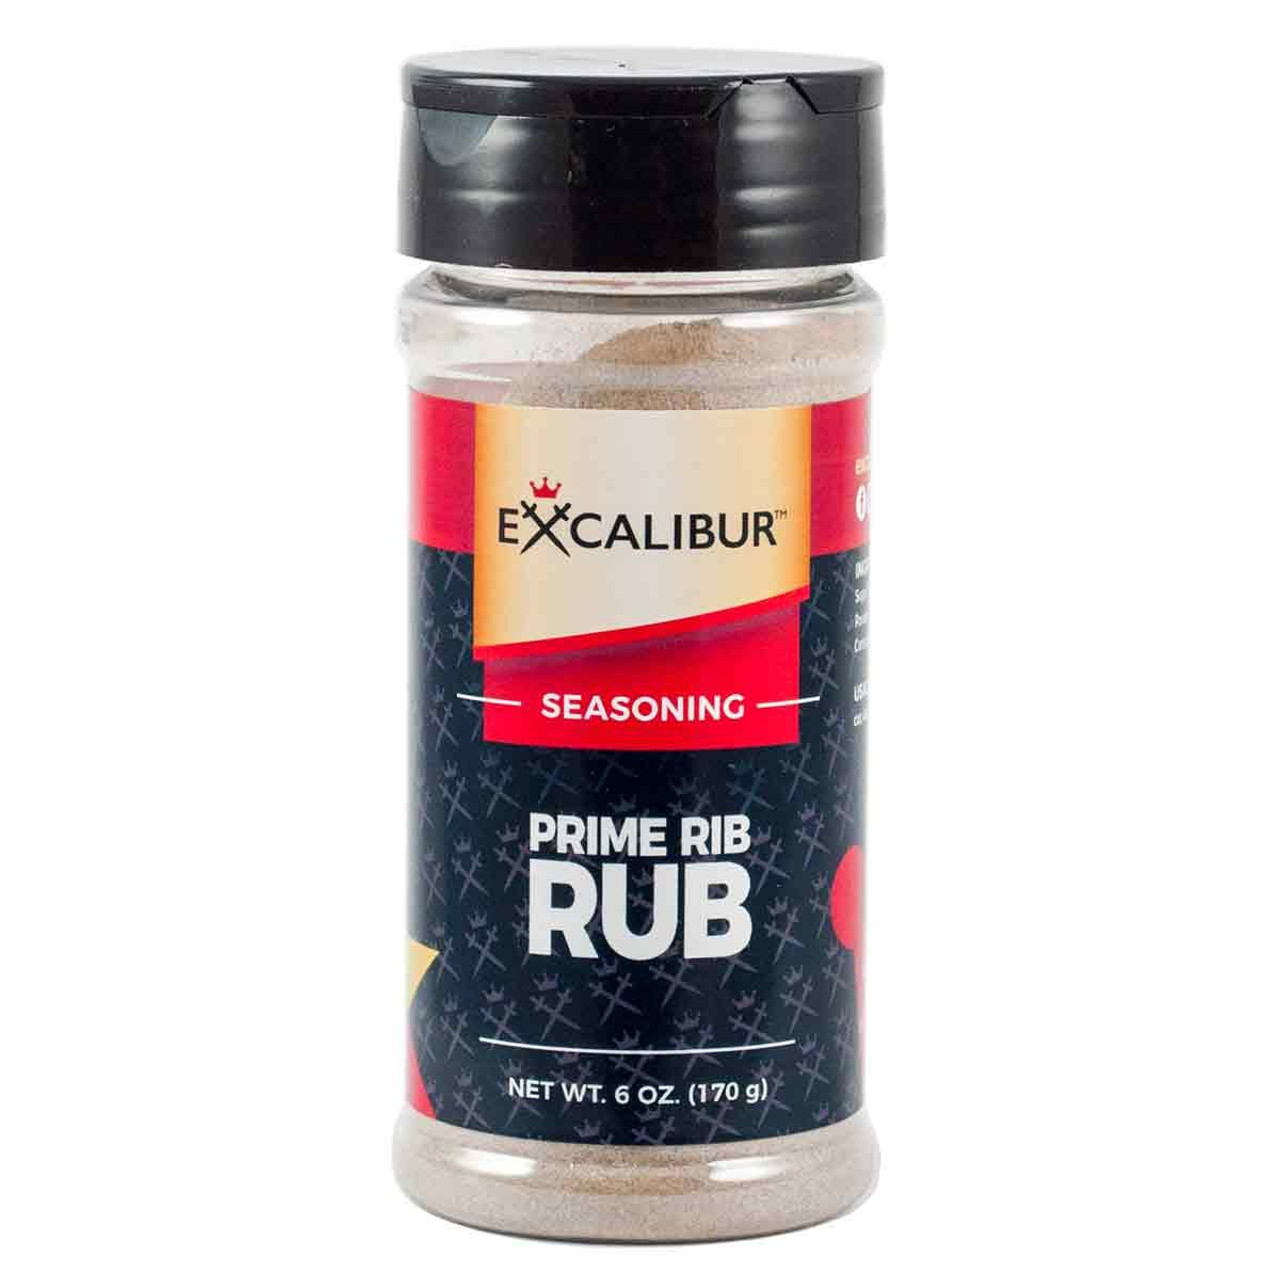 Prime Rib Rub Seasoning